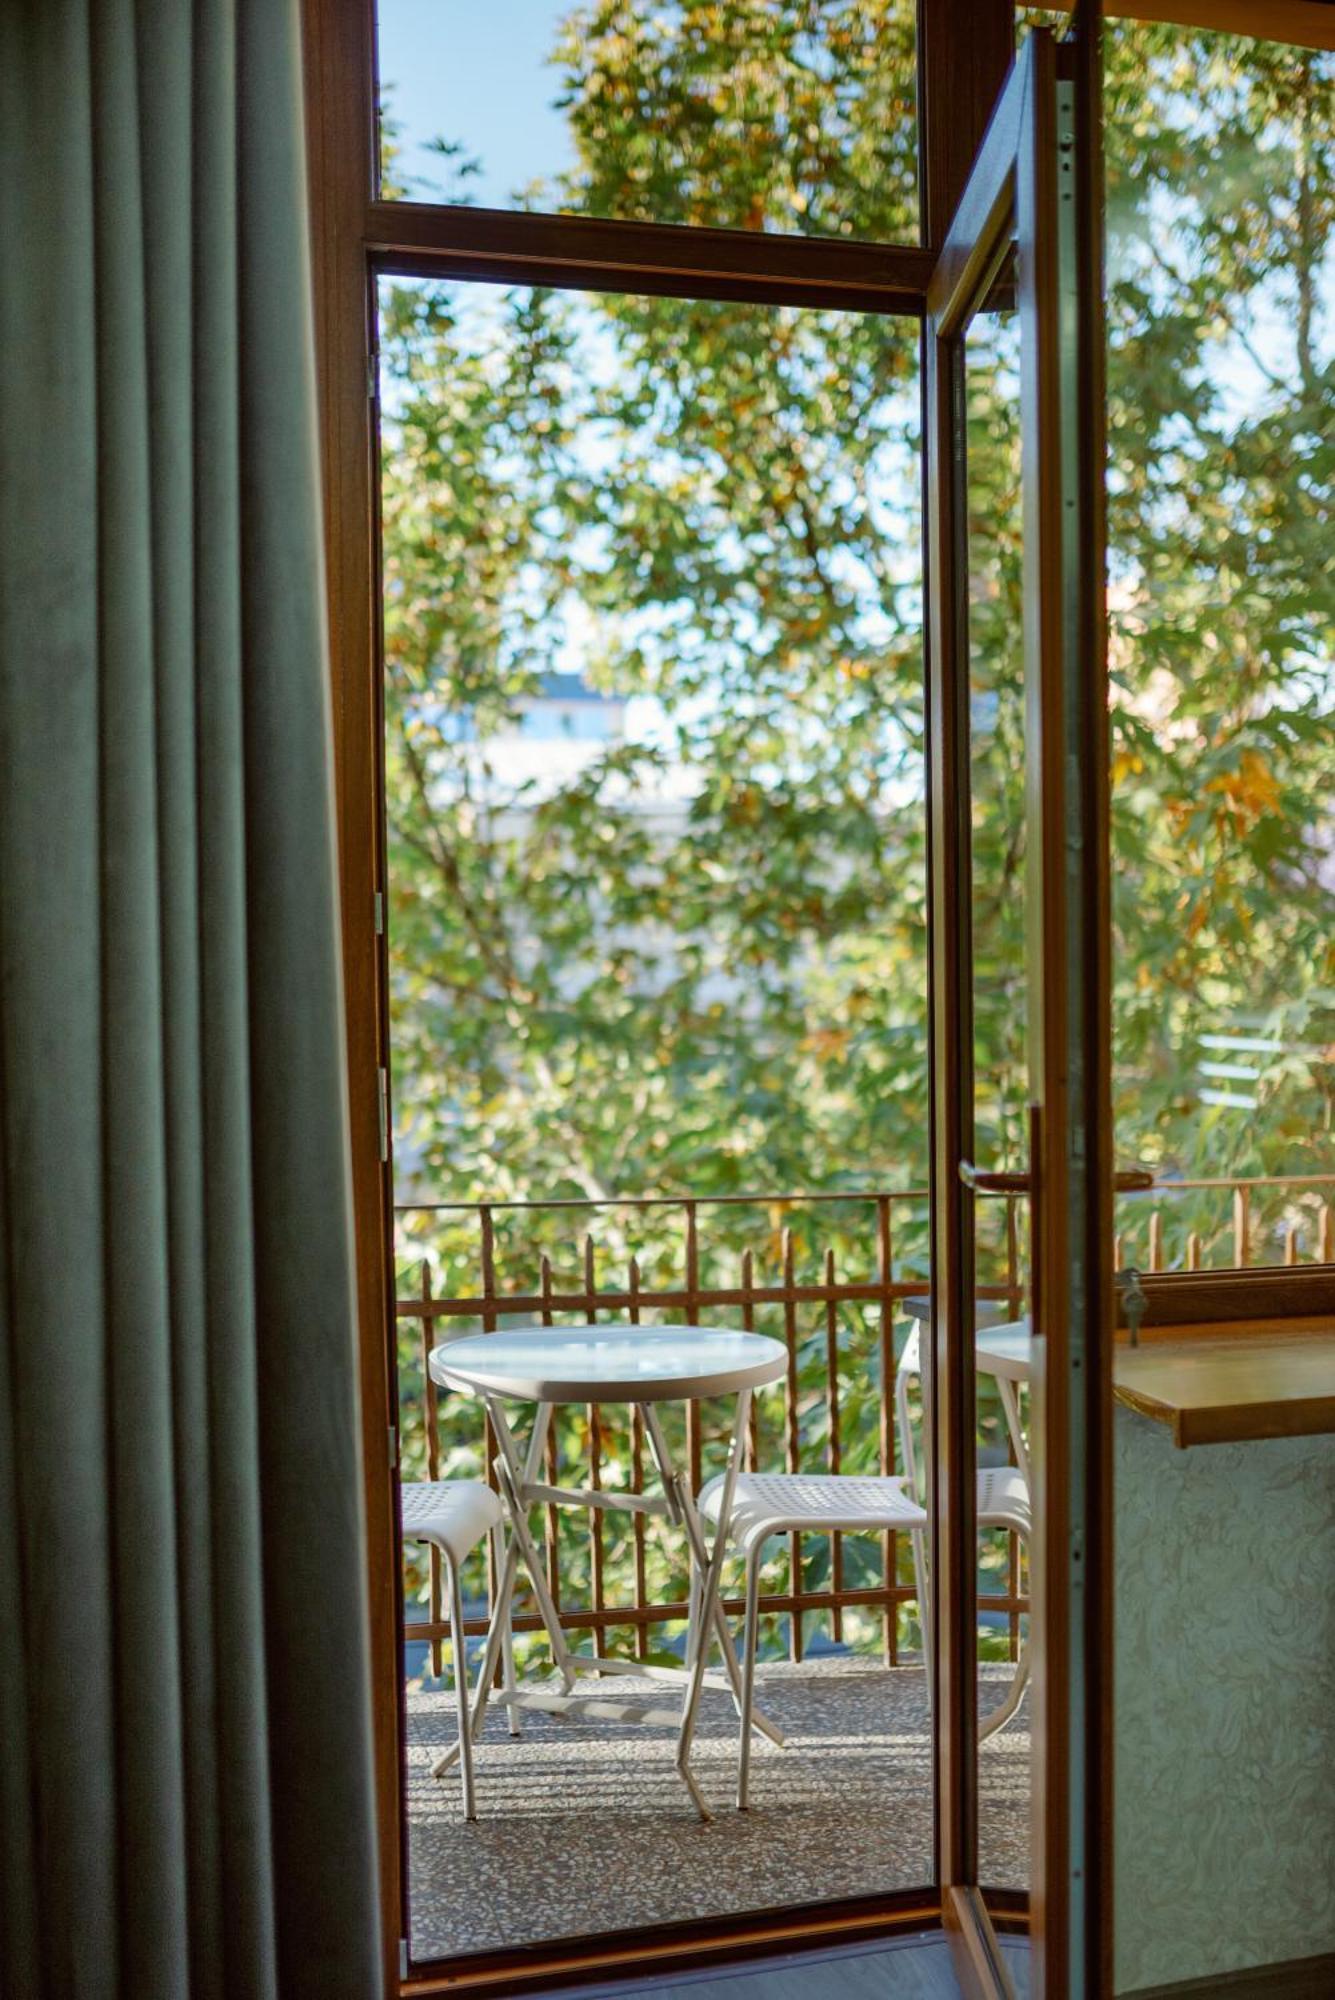 يريفان Opera Avenue Hotel المظهر الخارجي الصورة